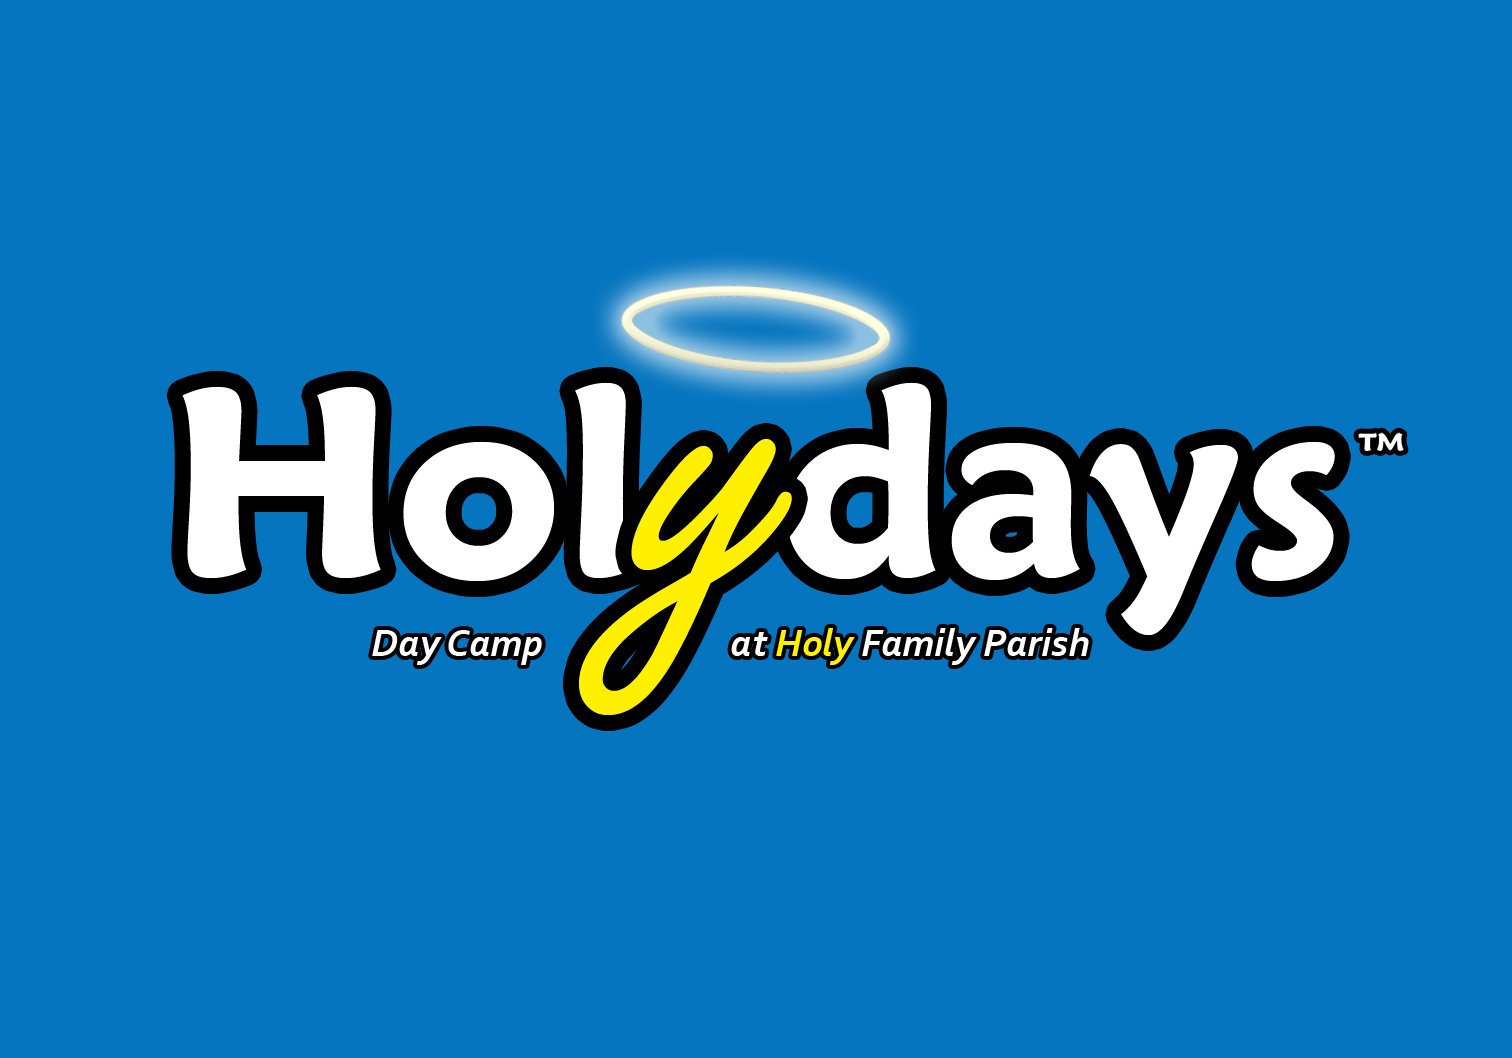 Holydays logo with background